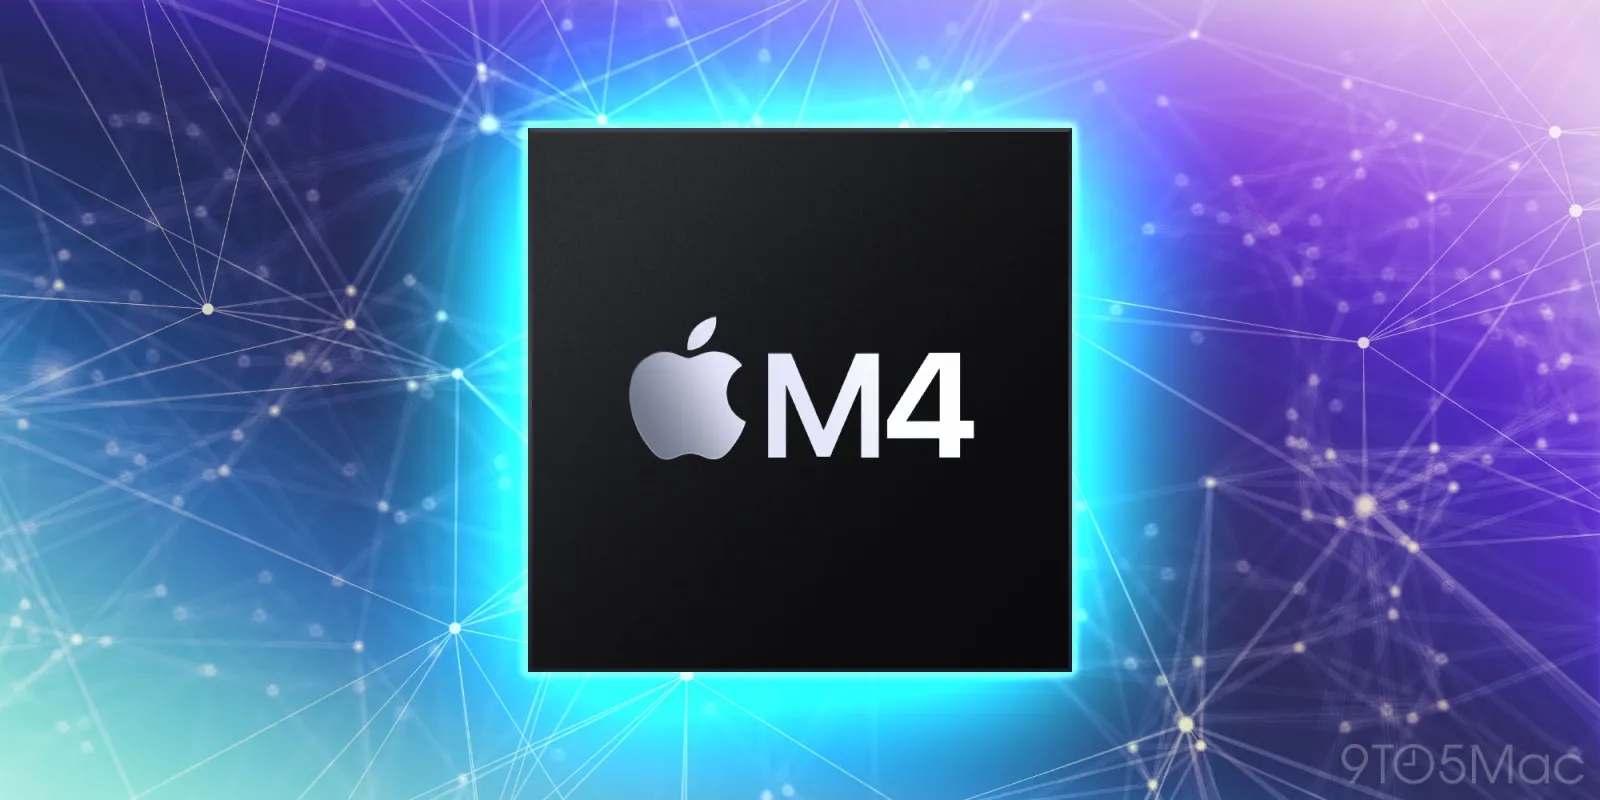 Apple M4 potrebbe nascondere più punti in comune con M3 di quanto non sembri